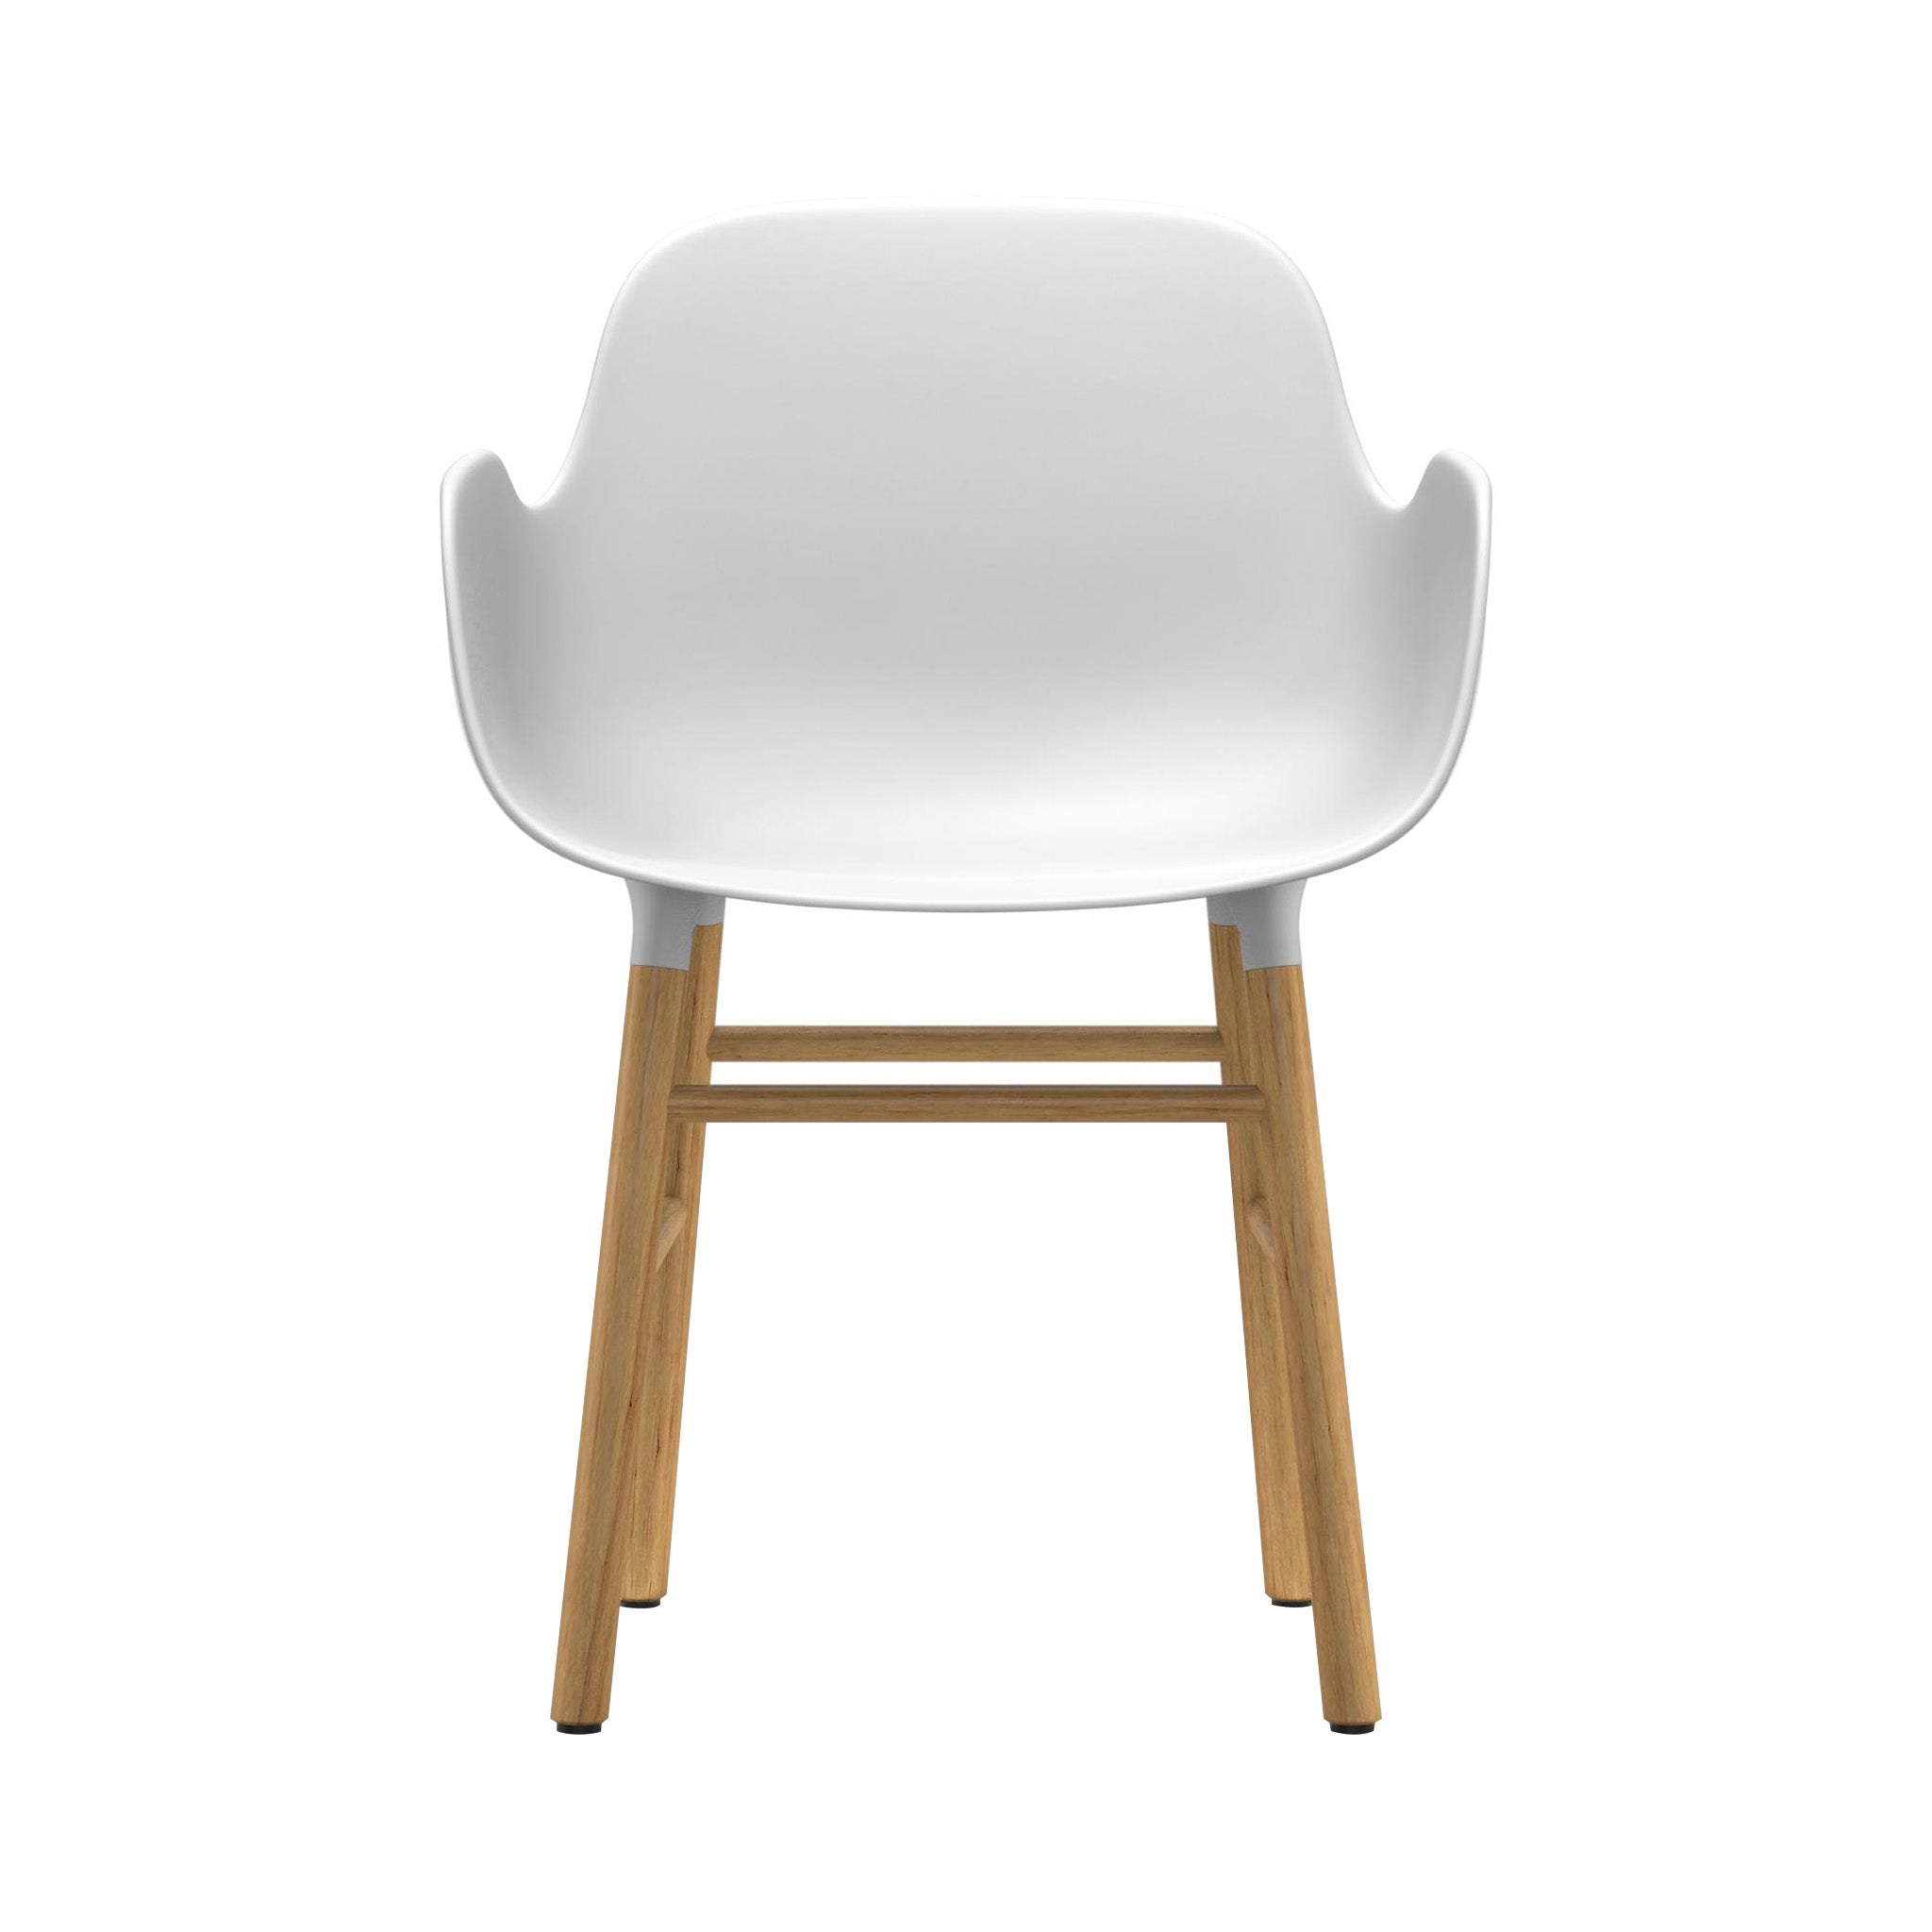 Form Armchair: Walnut or Oak Legs + White + Oak